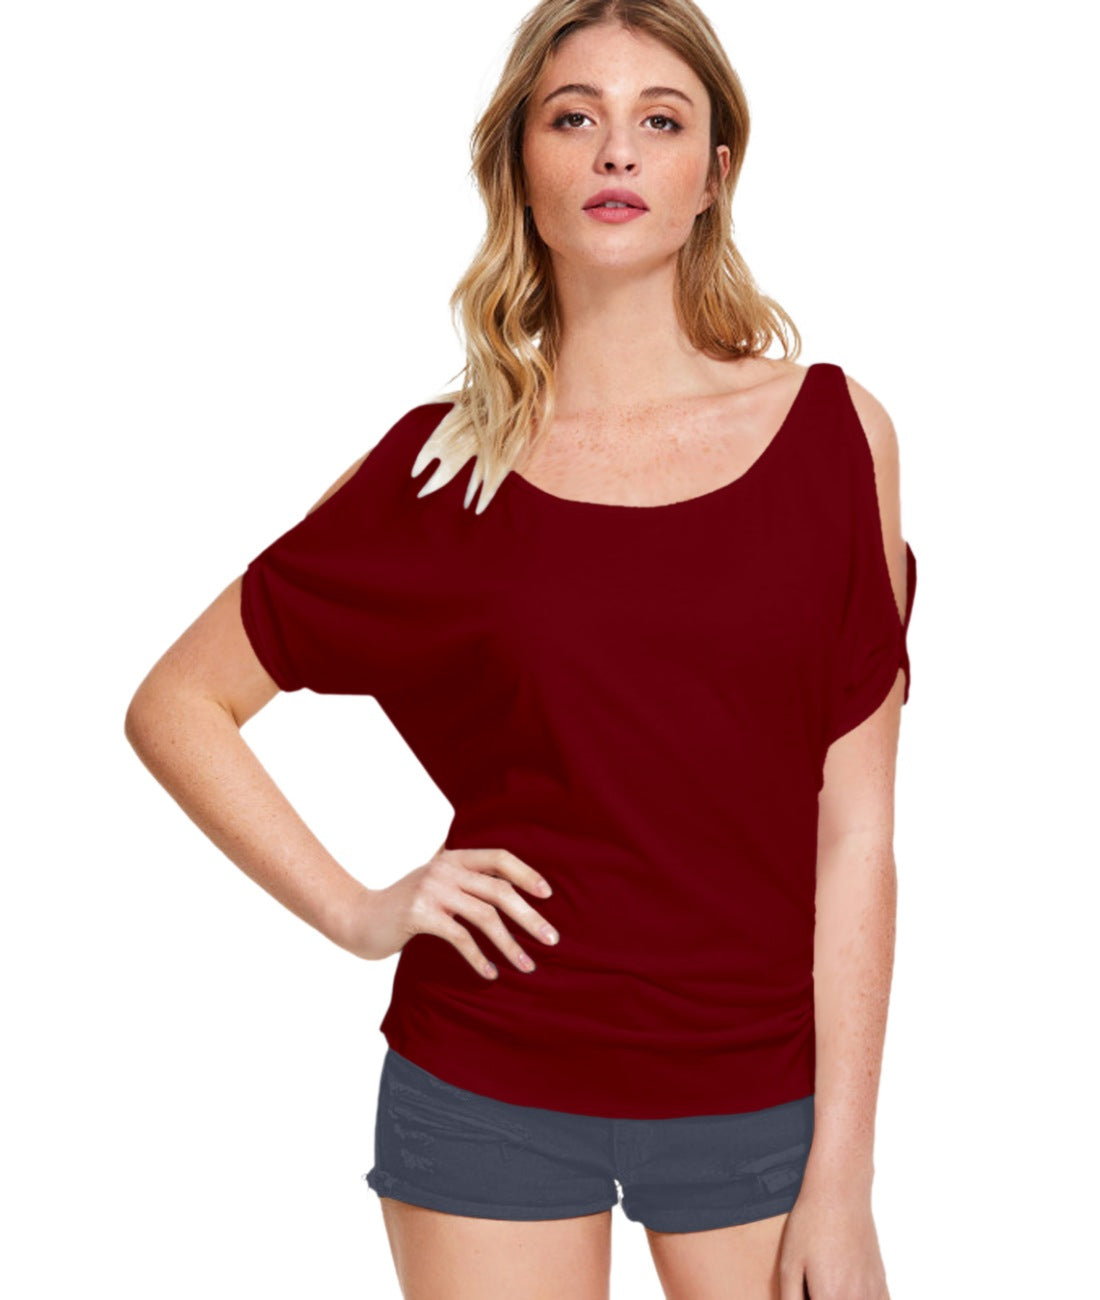 Women's Western Wear Hosiery T Shirts (Maroon) - GillKart